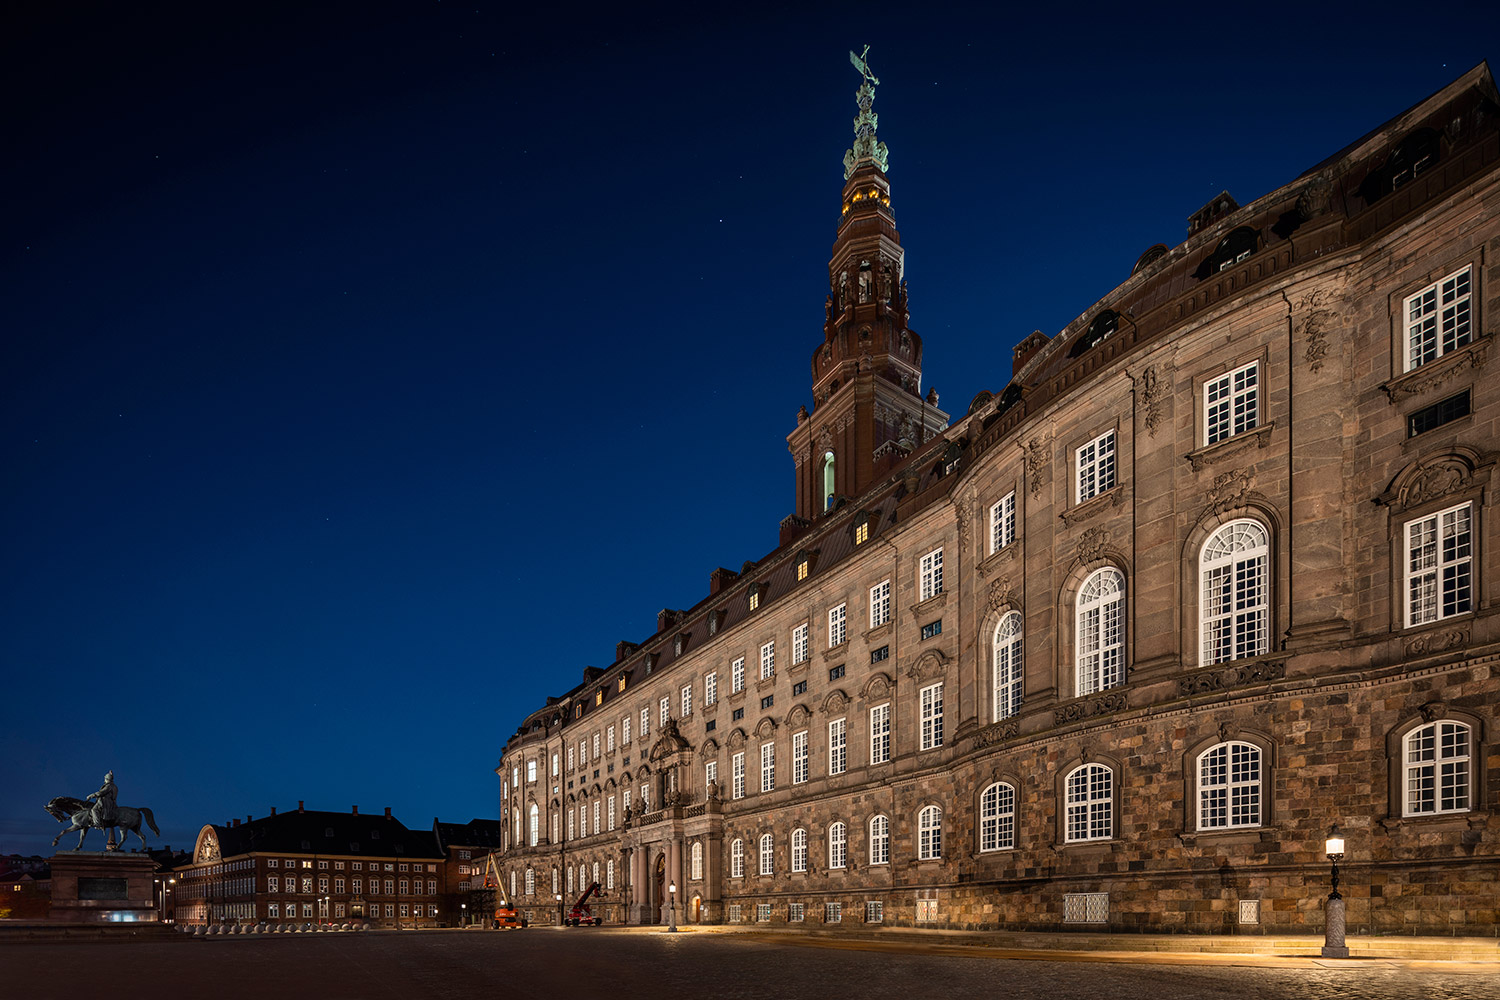 Maître d’ouvrage : Mairie de Copenhague – Systèmes : Citelum – Matériel d’éclairage : iGuzzini. ©Tomas Majewski